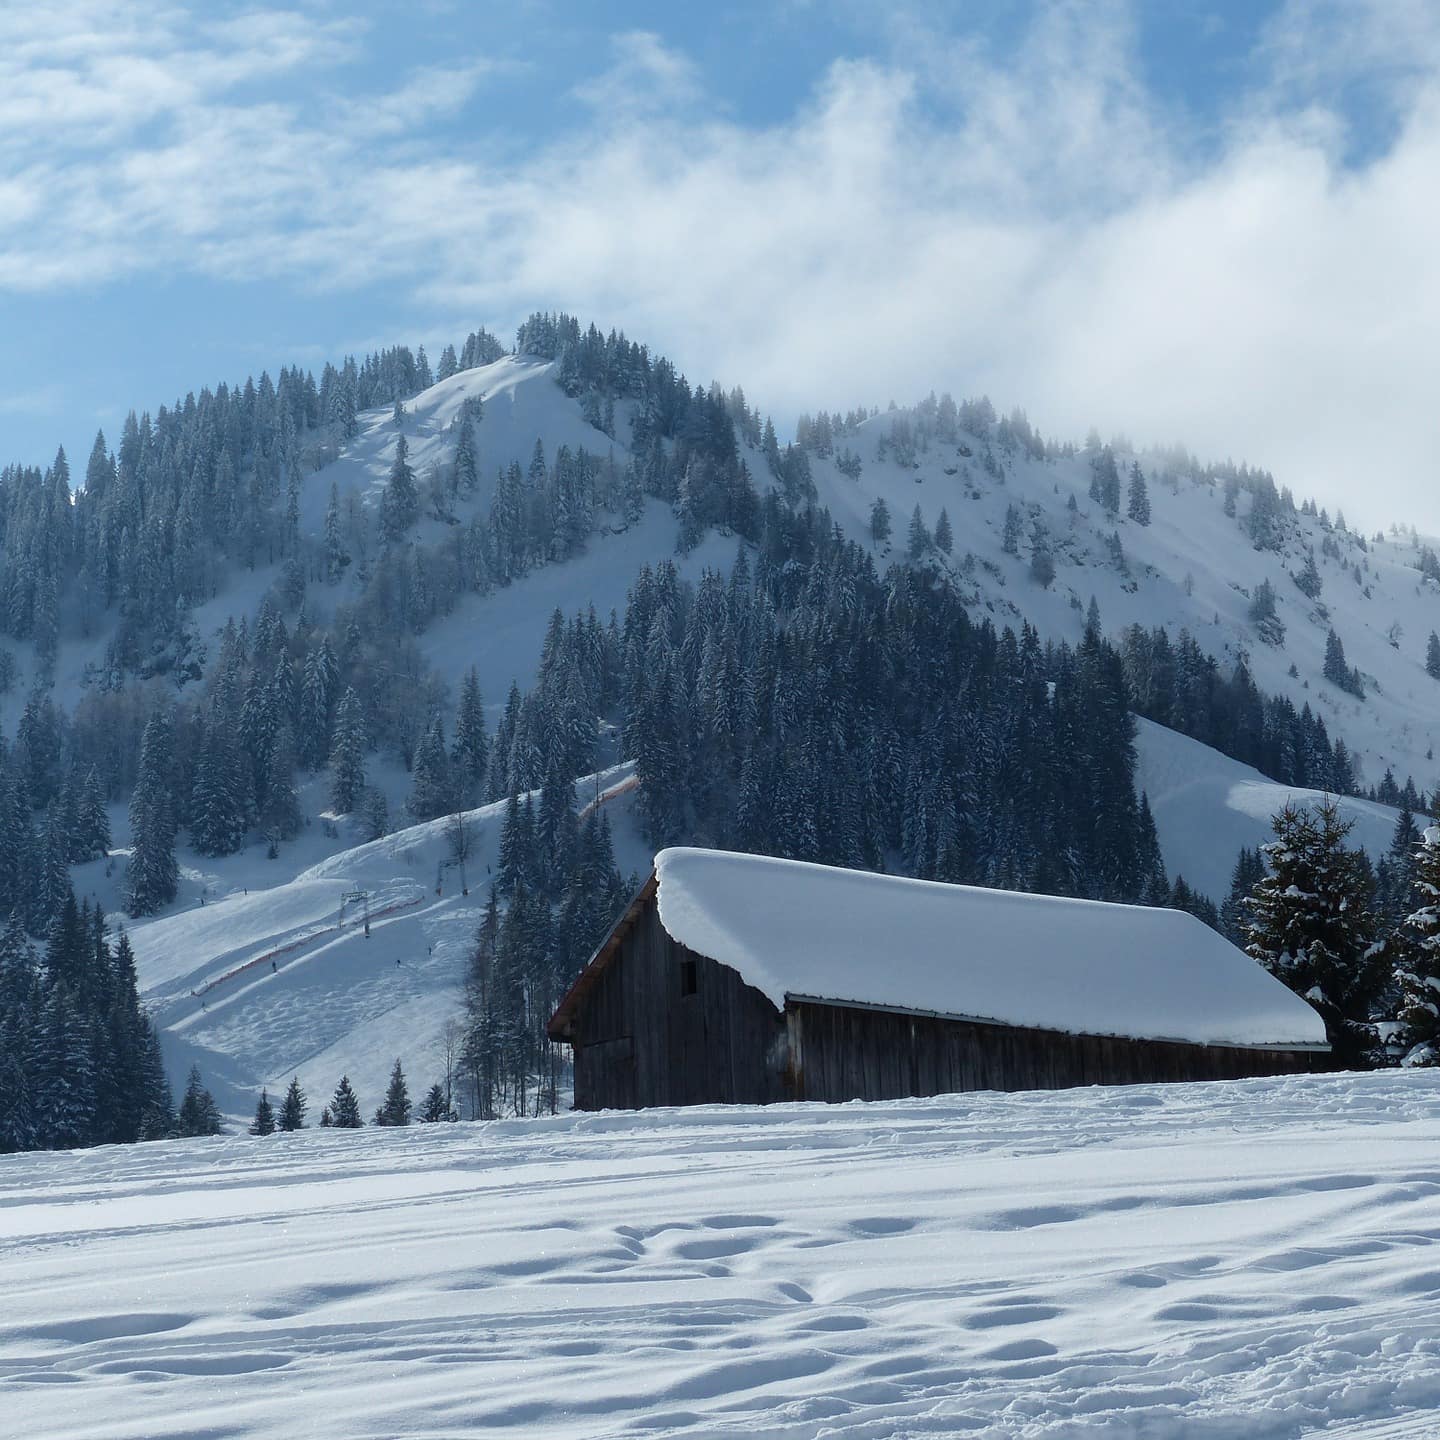 Berghütte im Allgäu im Winter inmitten einer verschneiten Landschaft